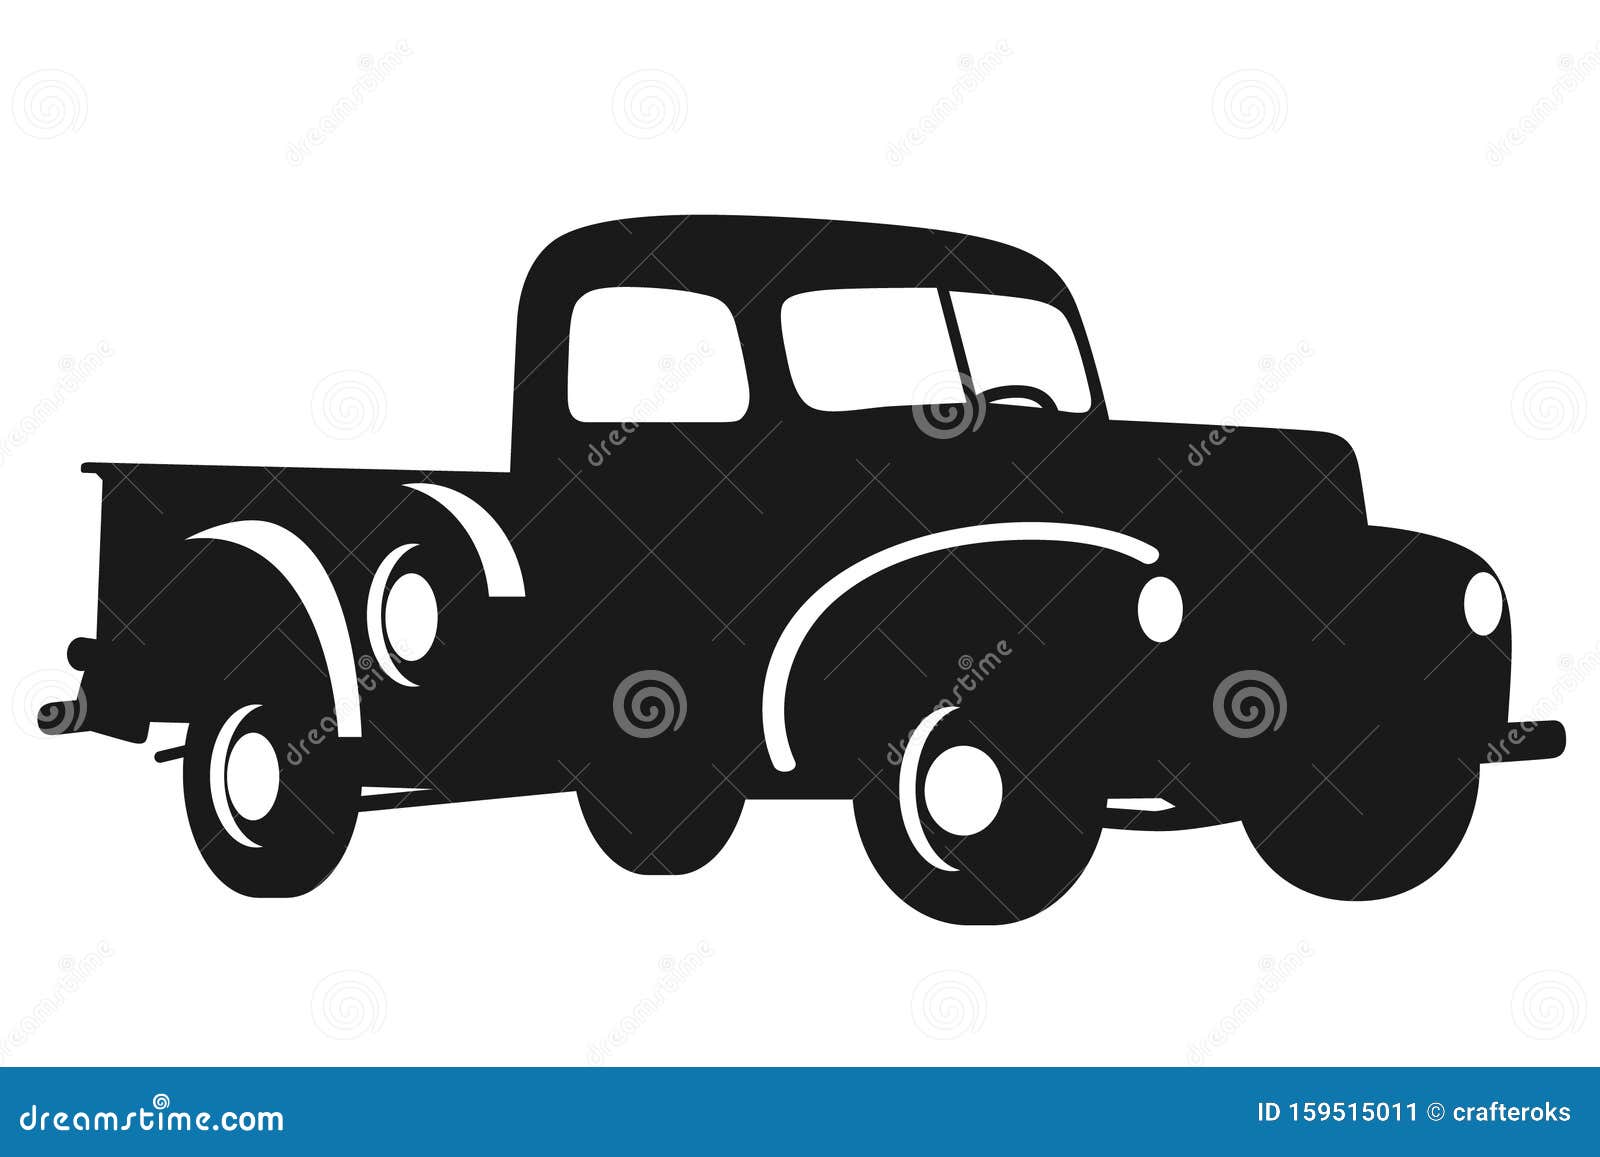 Download Vintage Farm Pickup Truck Svg Illustration Stock Illustration Illustration Of Pickup Icon 159515011